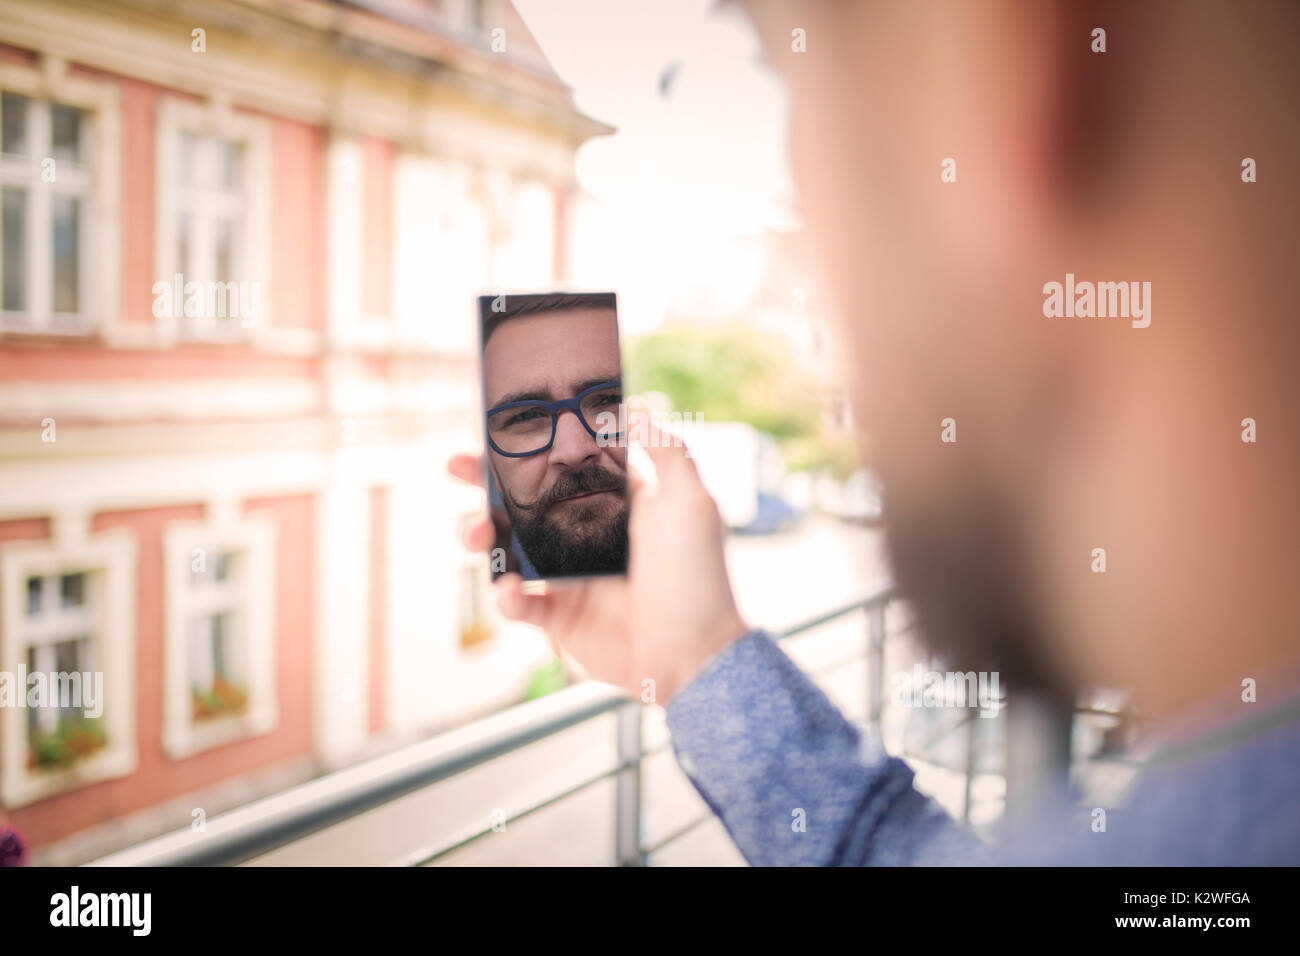 Reflet d'un visage de l'homme au téléphone mobile Banque D'Images